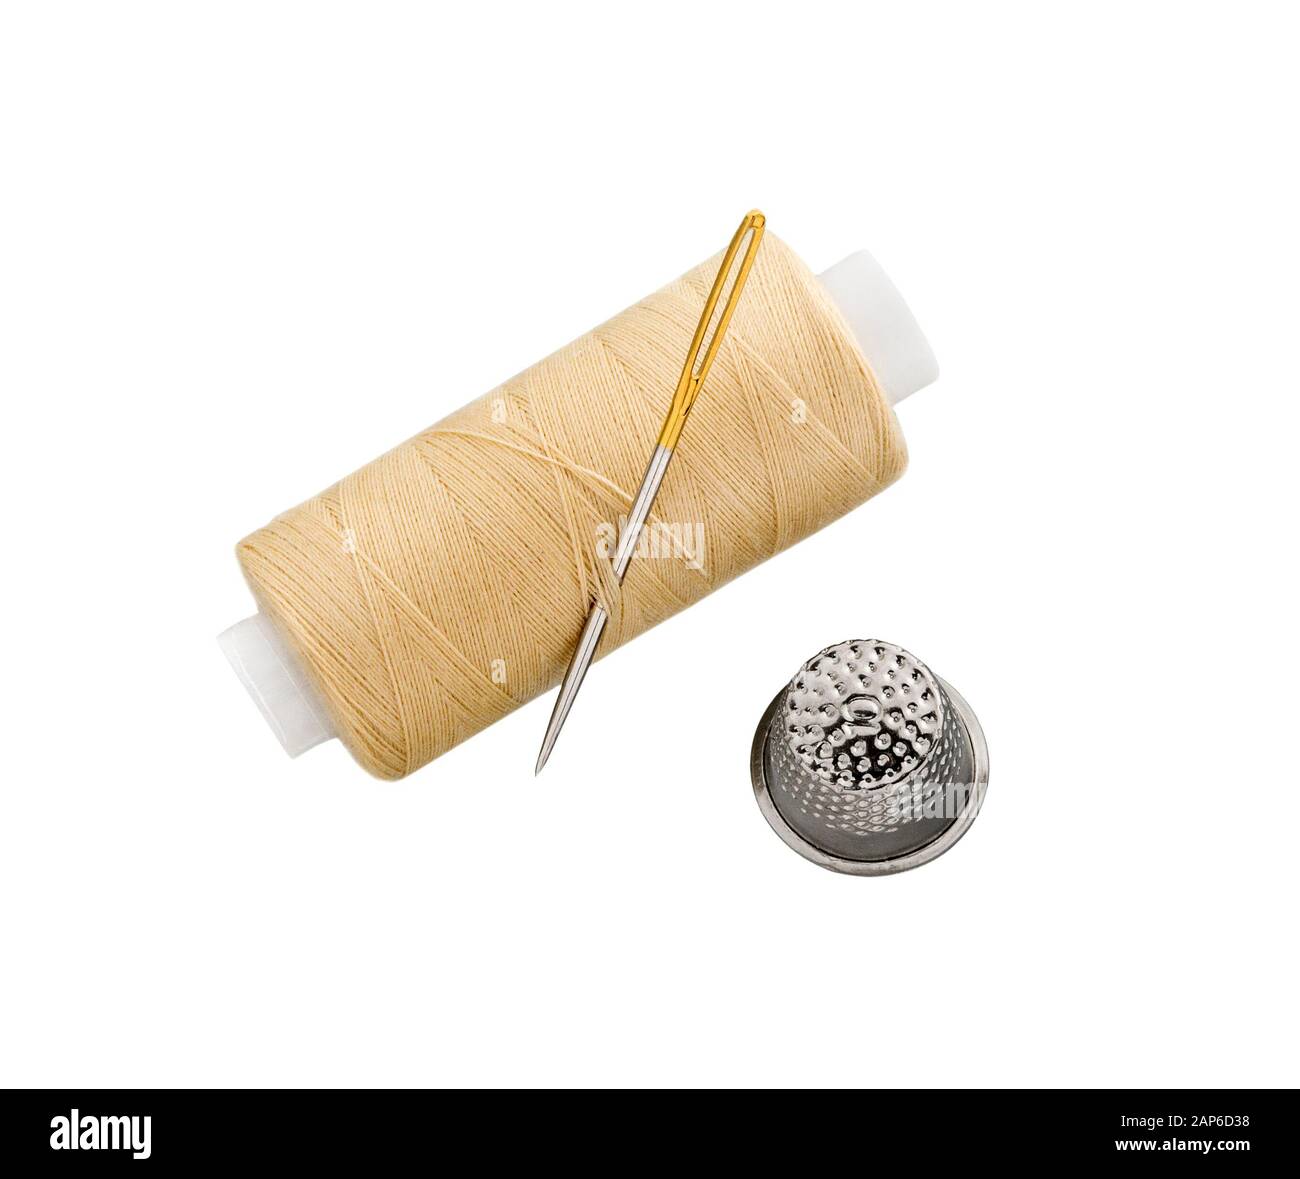 Filo per cucire con ago per cucire e tamburo isolato su sfondo bianco Foto Stock